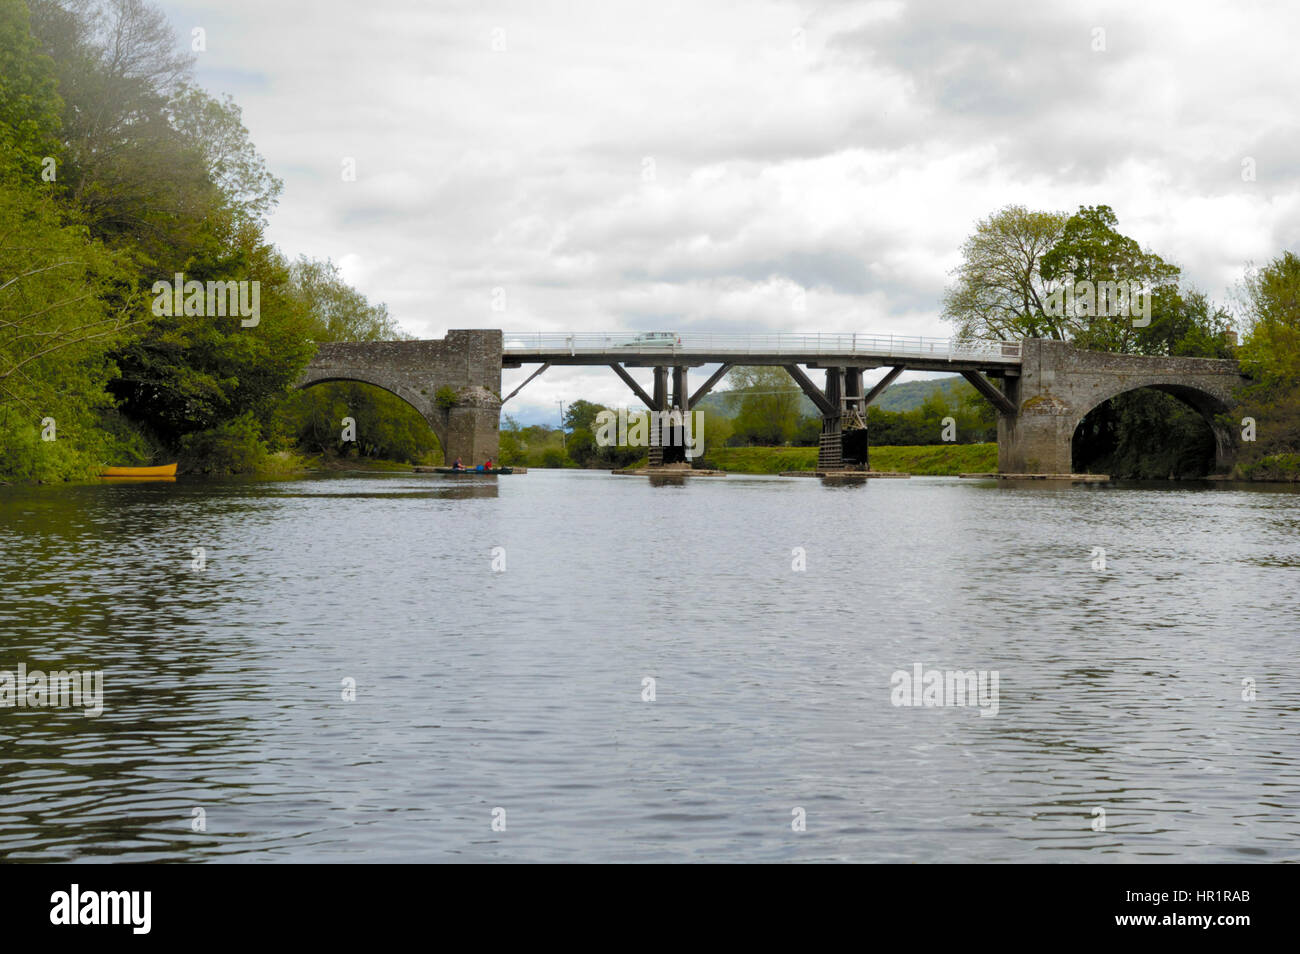 Whitney ponte a pedaggio dal fiume Wye Foto Stock